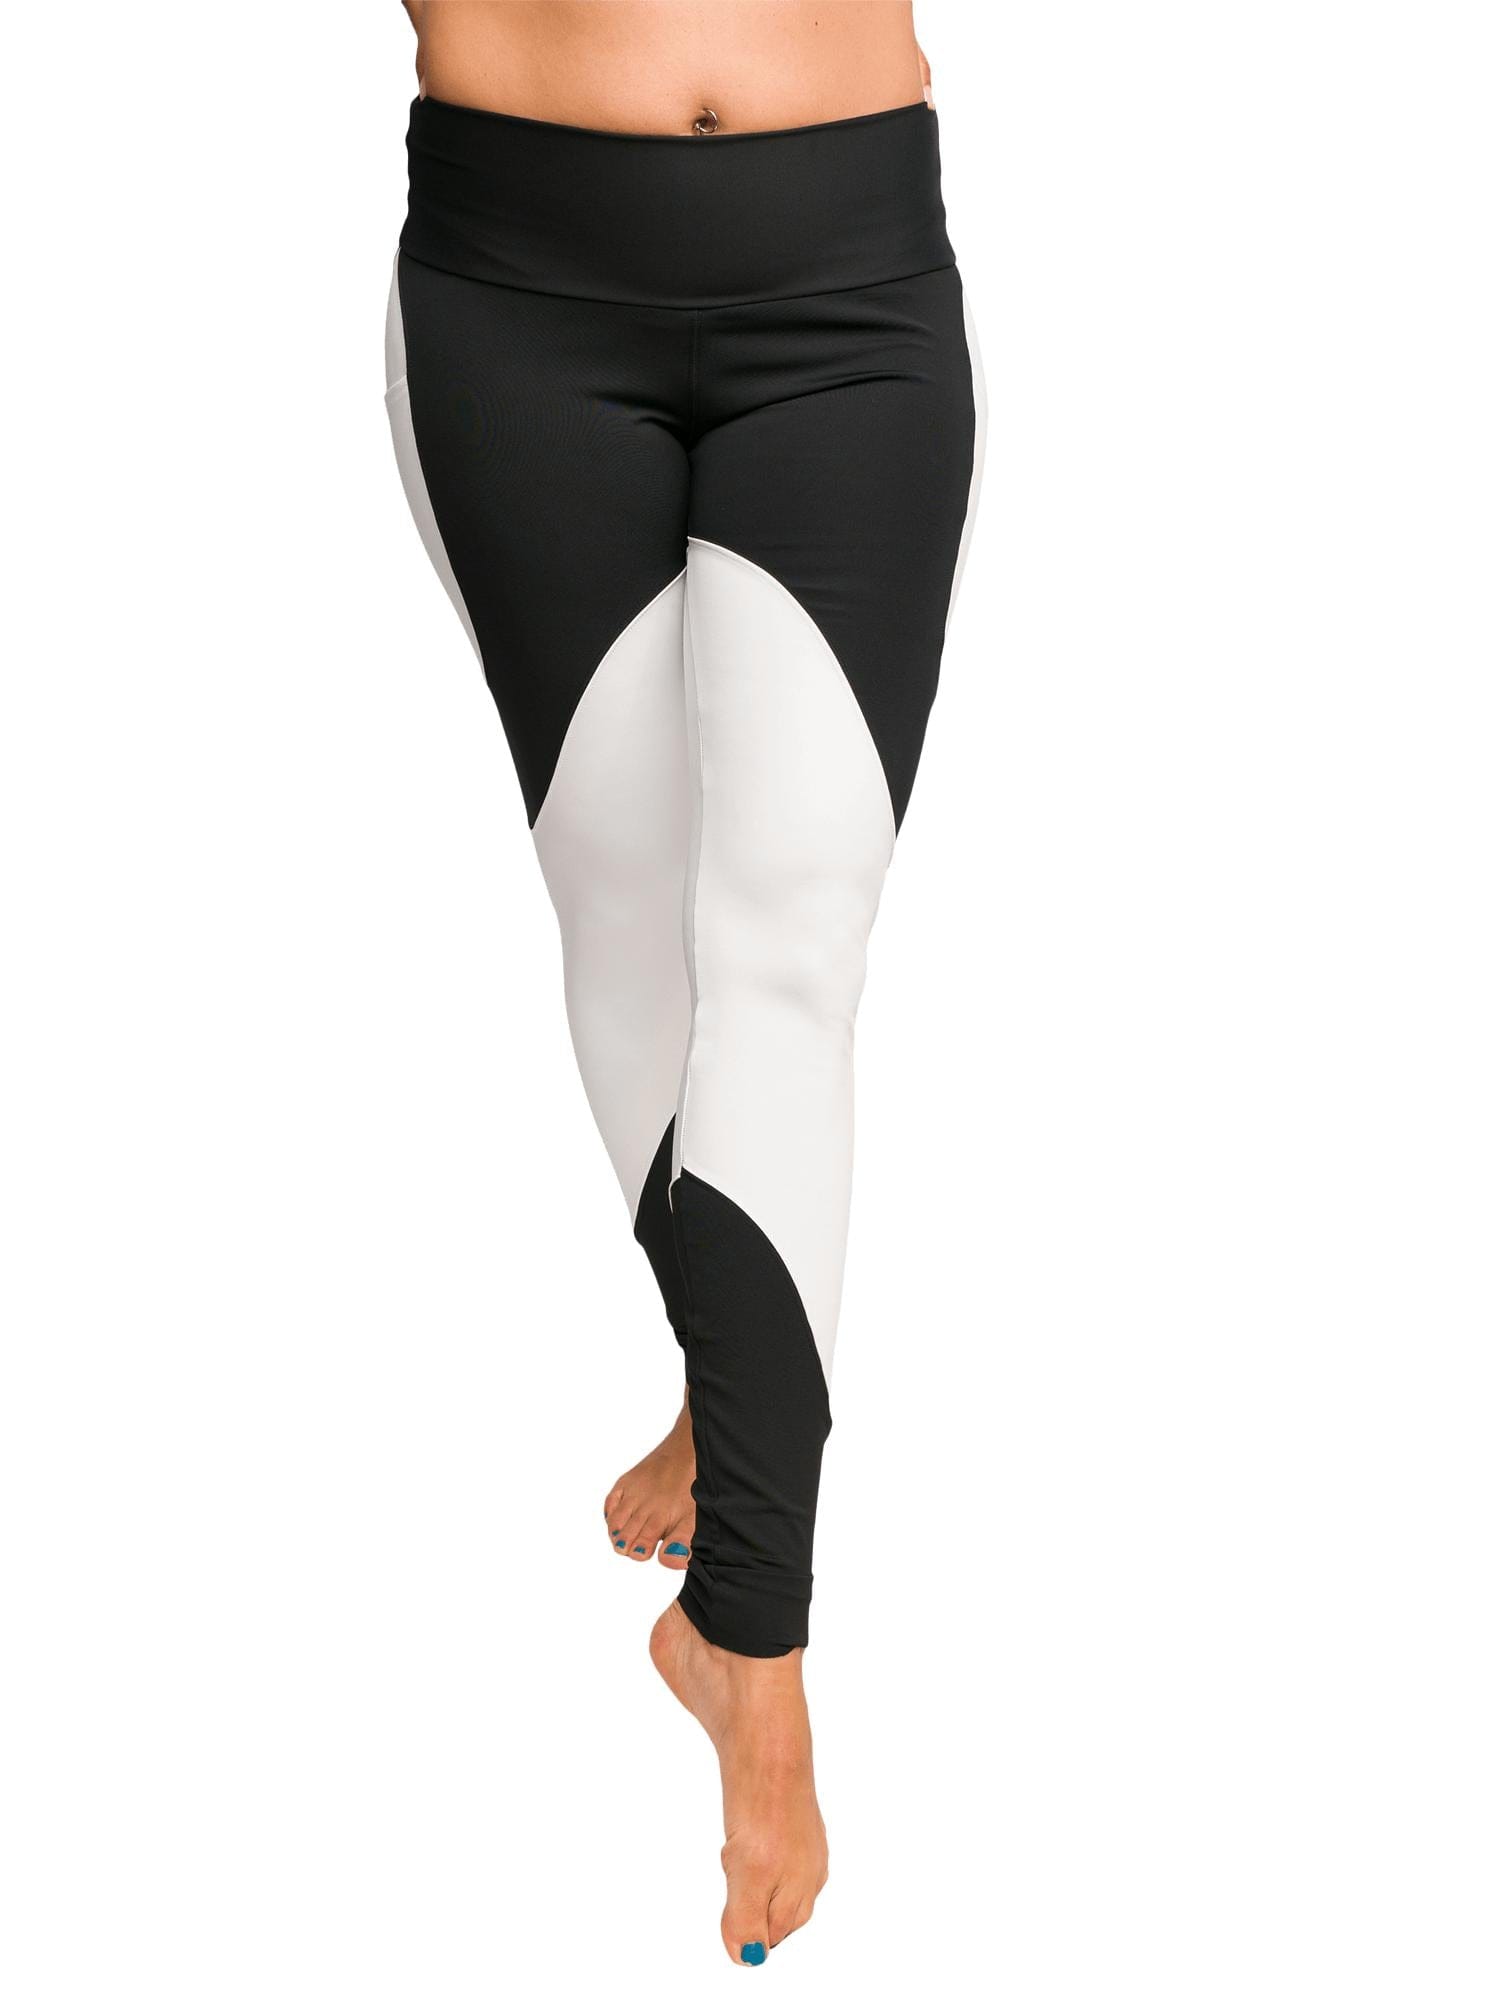 Women's Black and White Graffiti Clouds Plus Size Yoga Pants Workout  Leggings For Jiu Jitsu 001